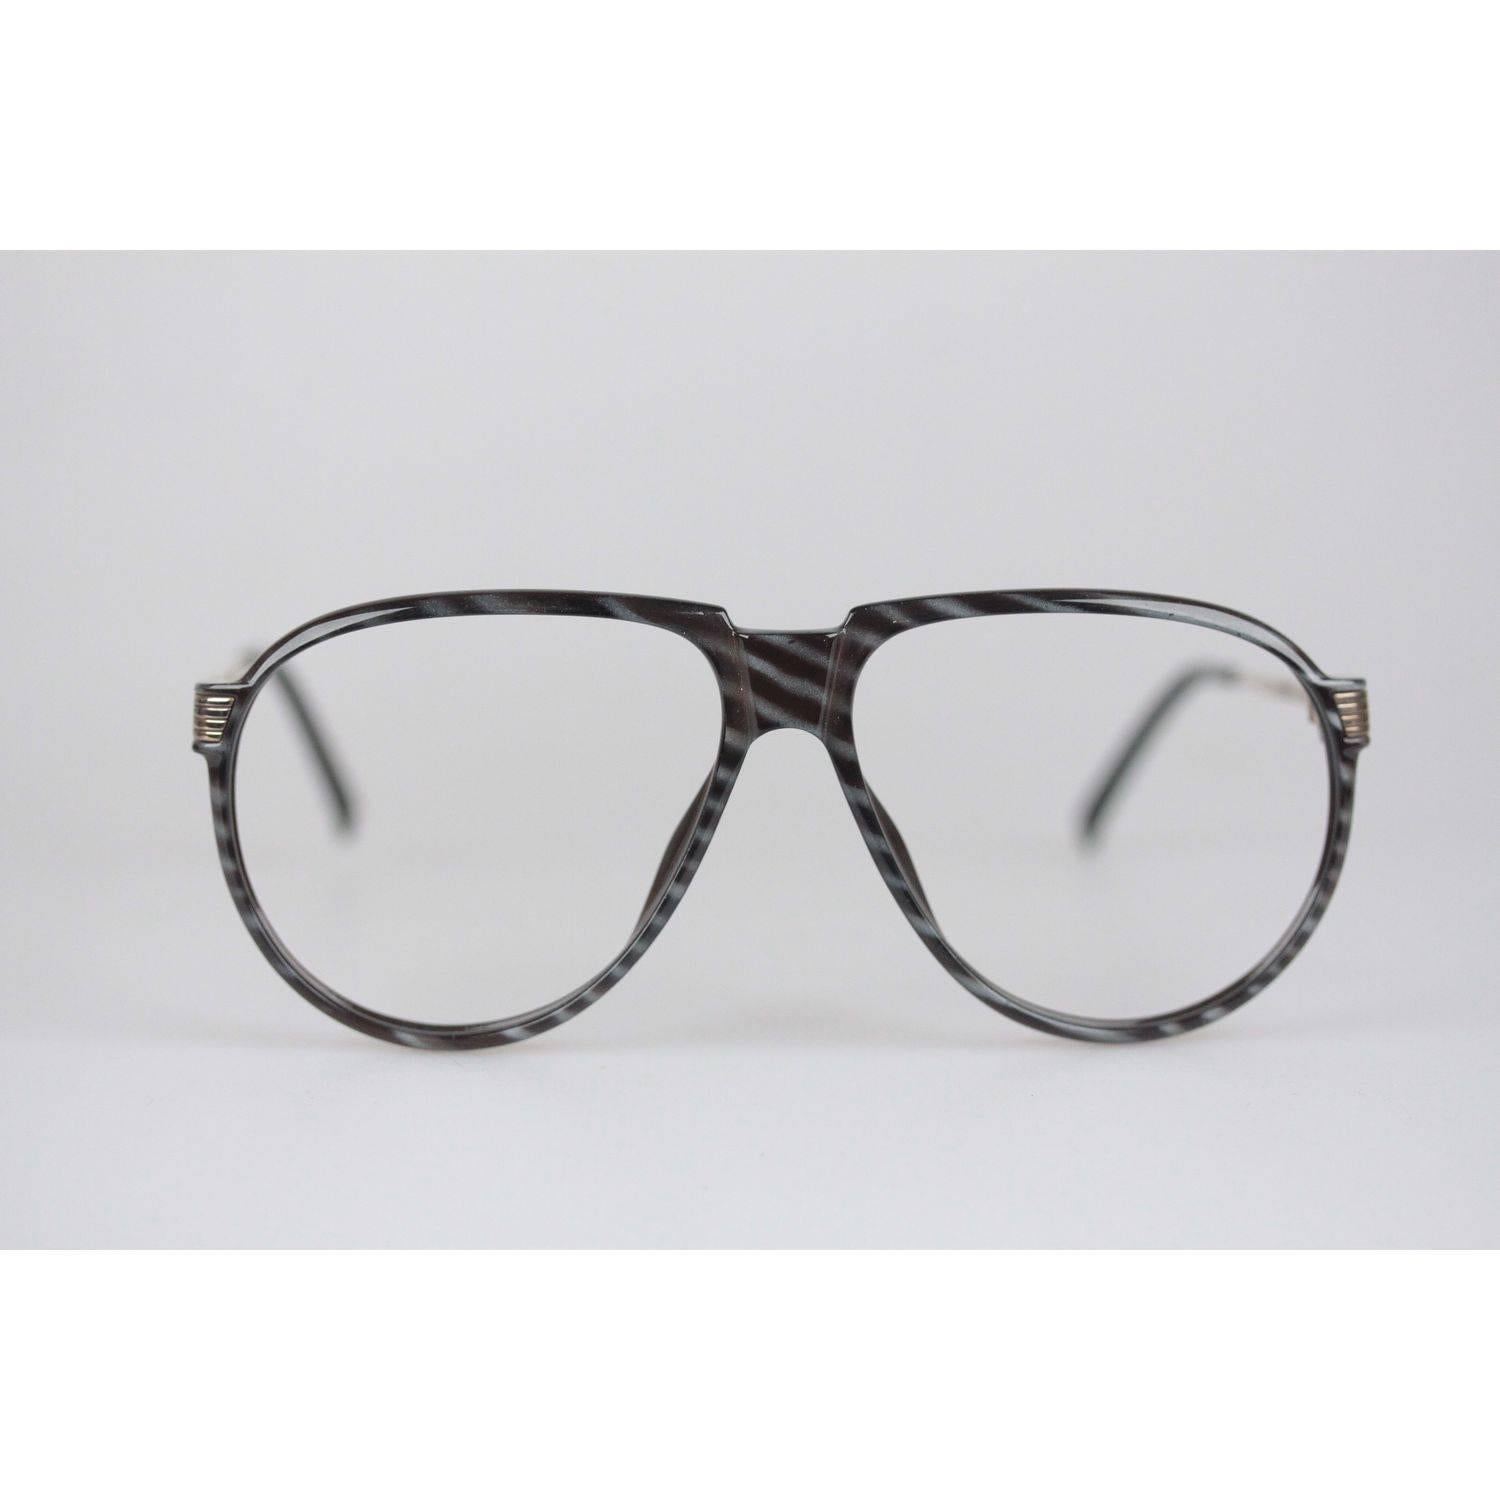 Christian Dior Monsieur Vintage Black Striped Frame Eyeglasses 2266 60mm 135 NOS 4